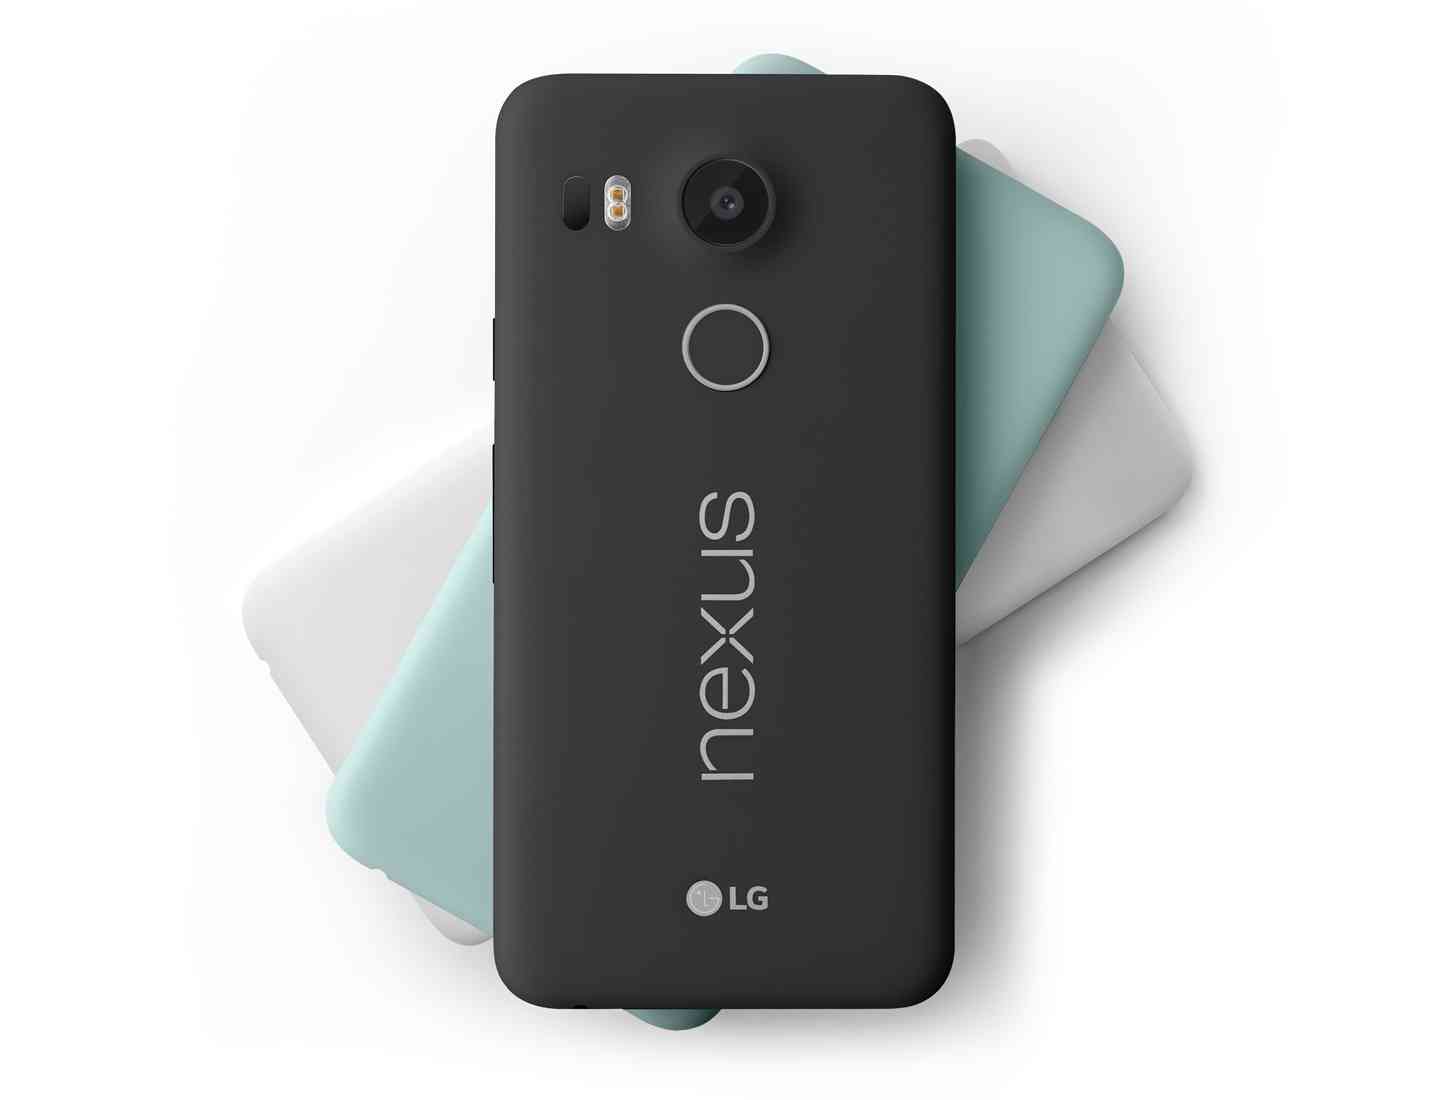 Nexus 5X colors